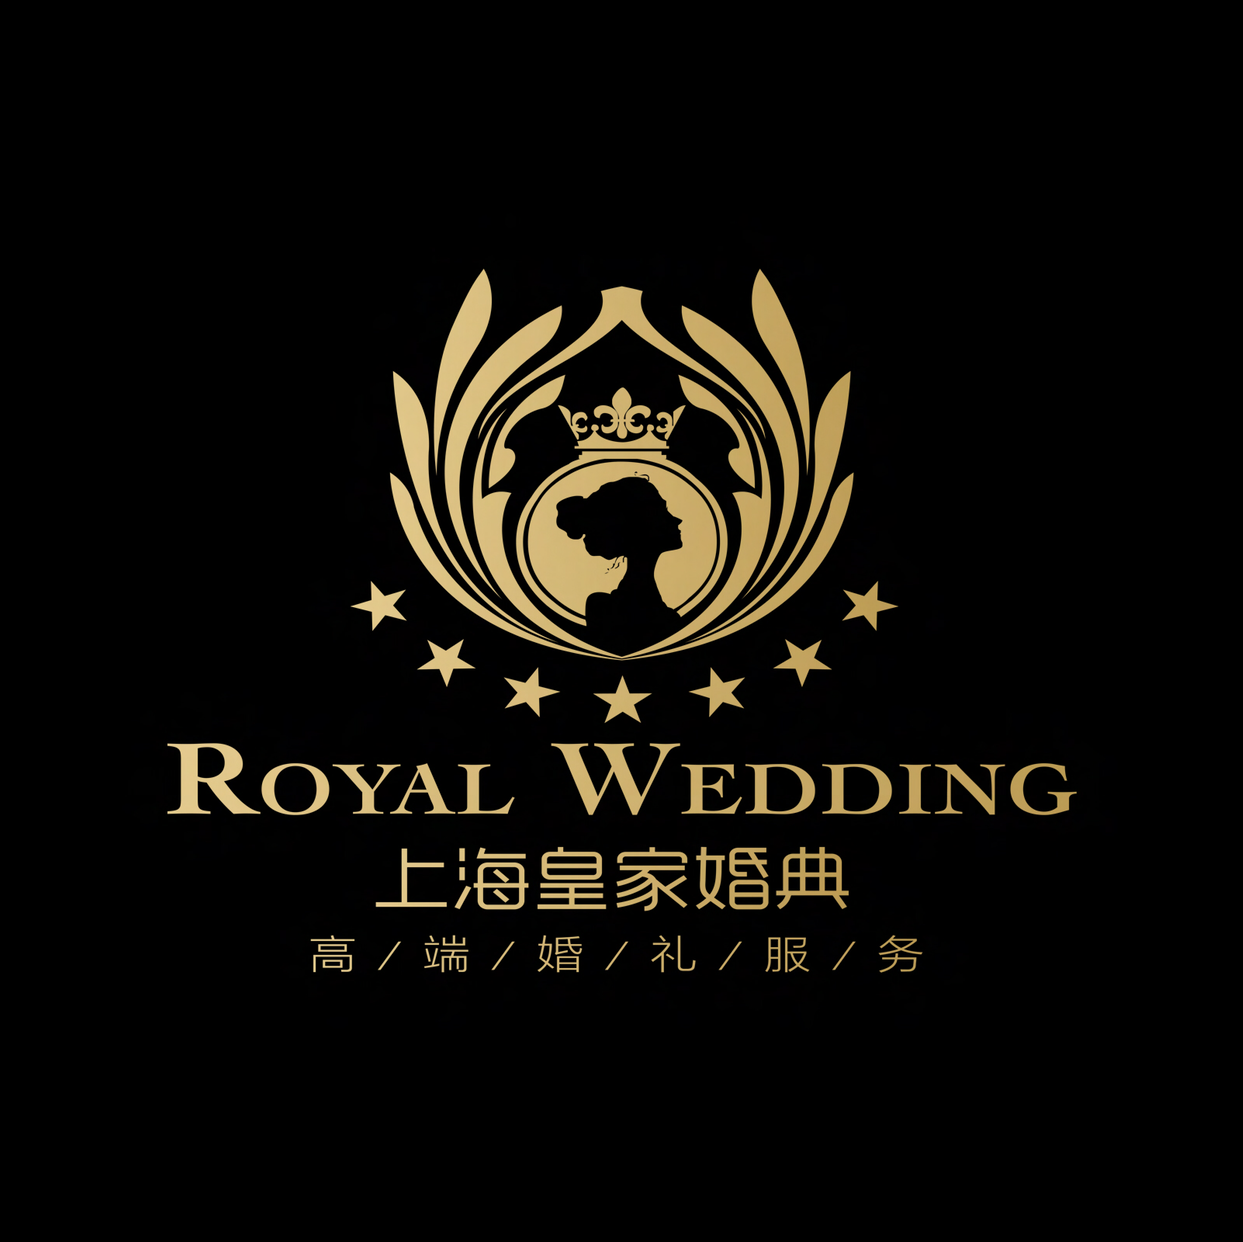 上海皇家婚典婚礼服务